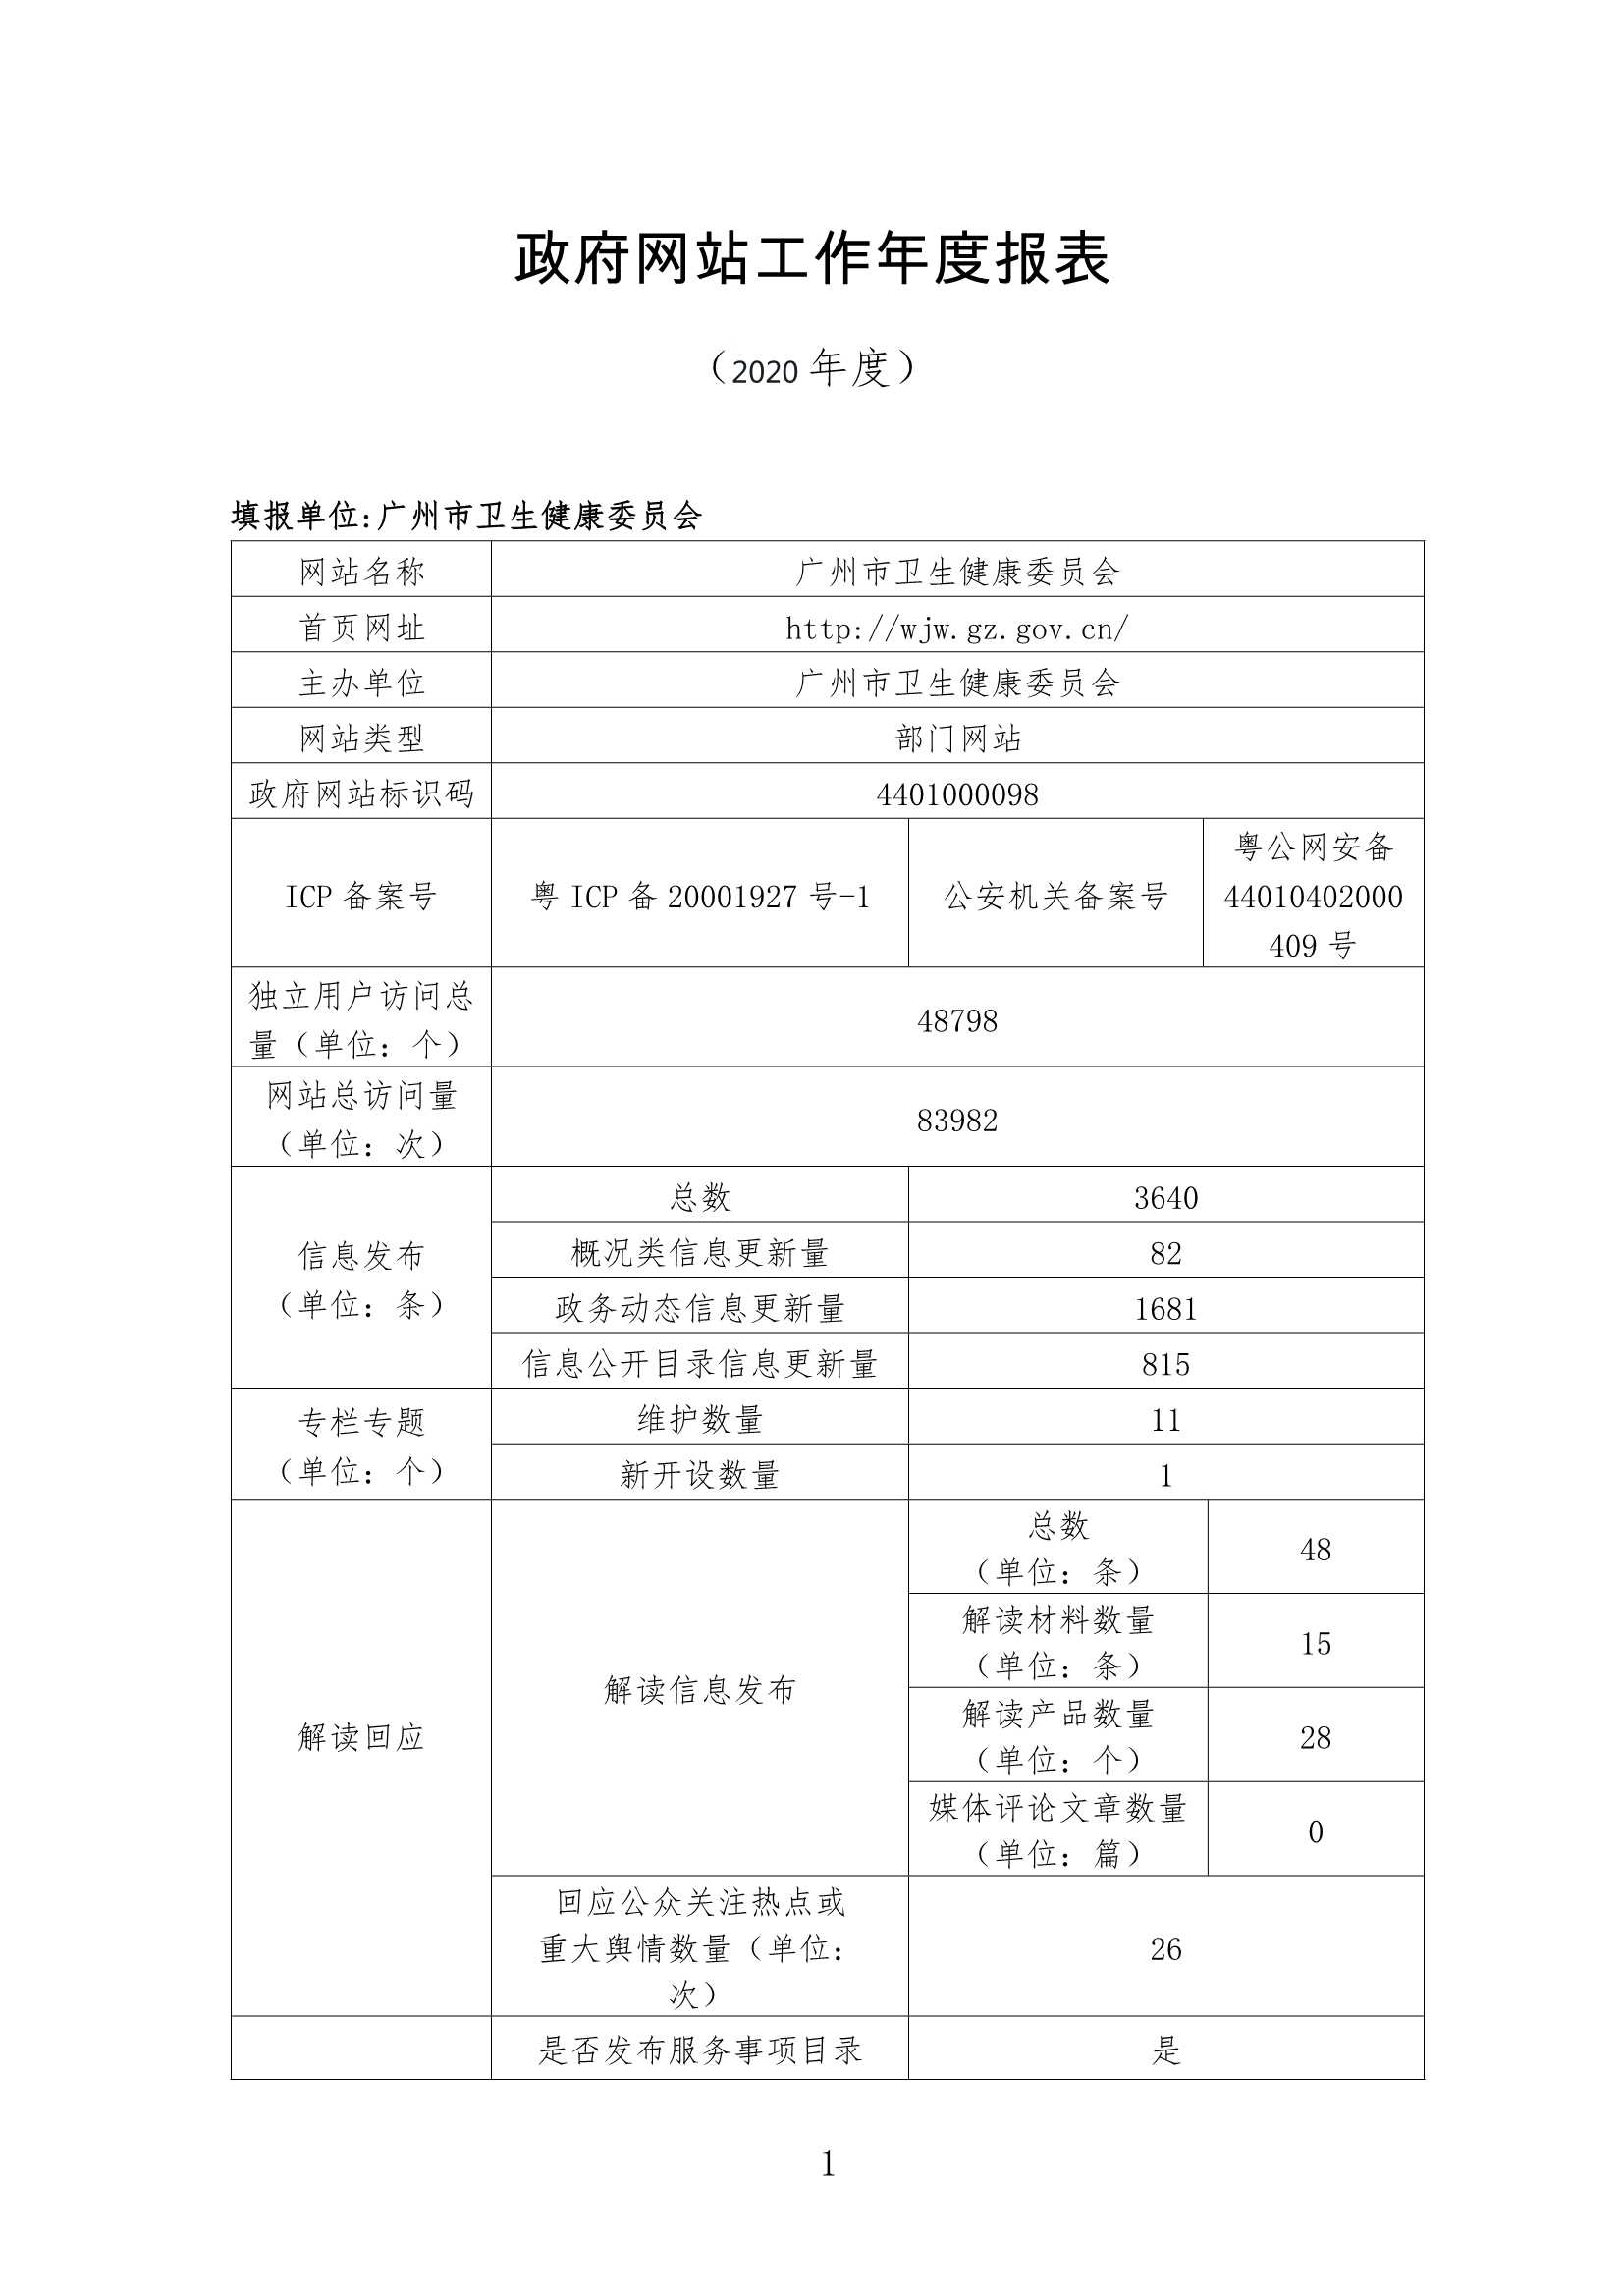 广州市卫生健康委员会政府网站年度工作报表（2020年度）_1.Jpeg